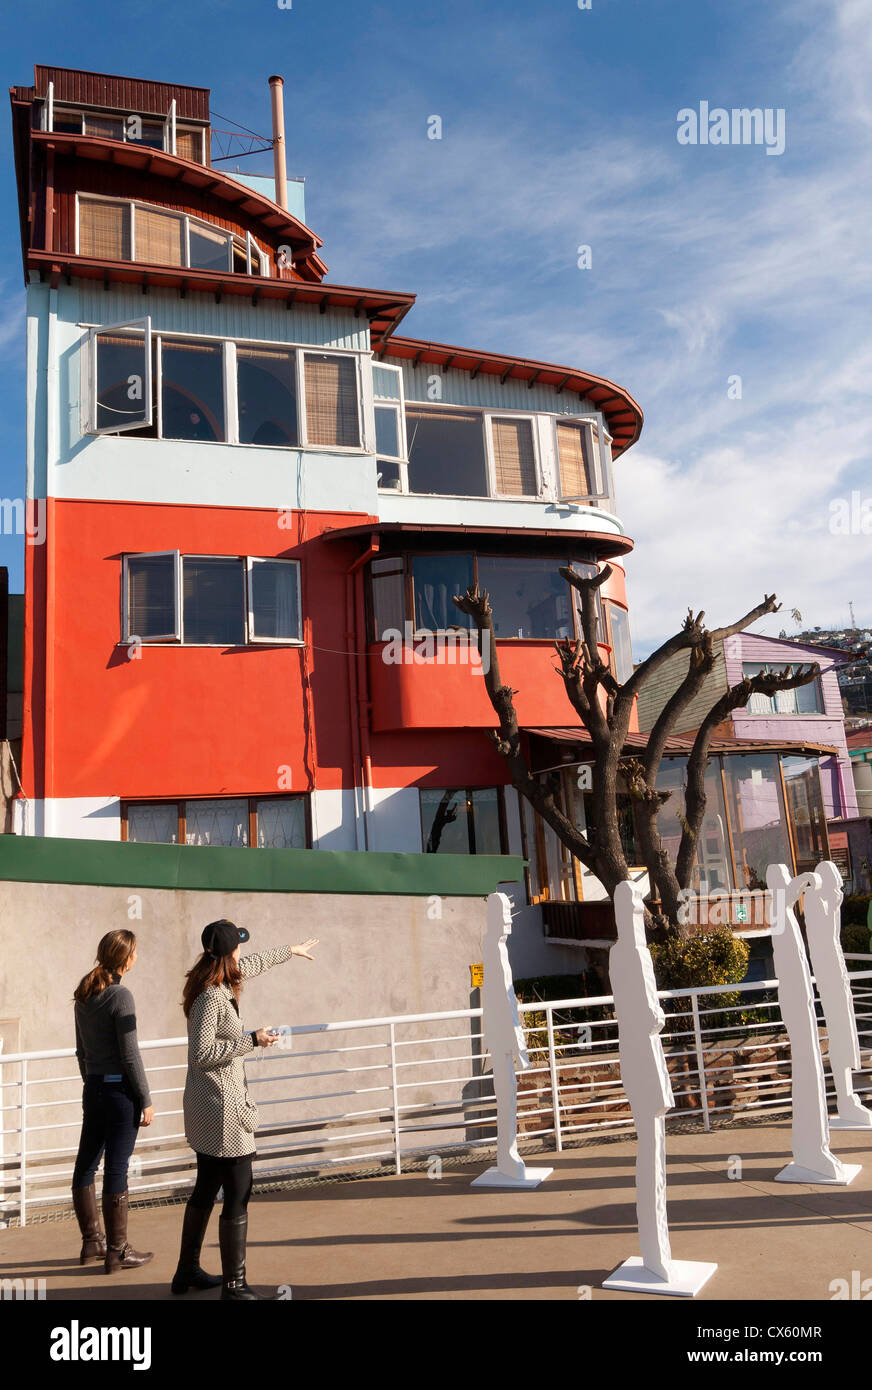 Pablo Neruda home in Valparaiso, La Sebastiana on Cerro Florida, Chile Stock Photo